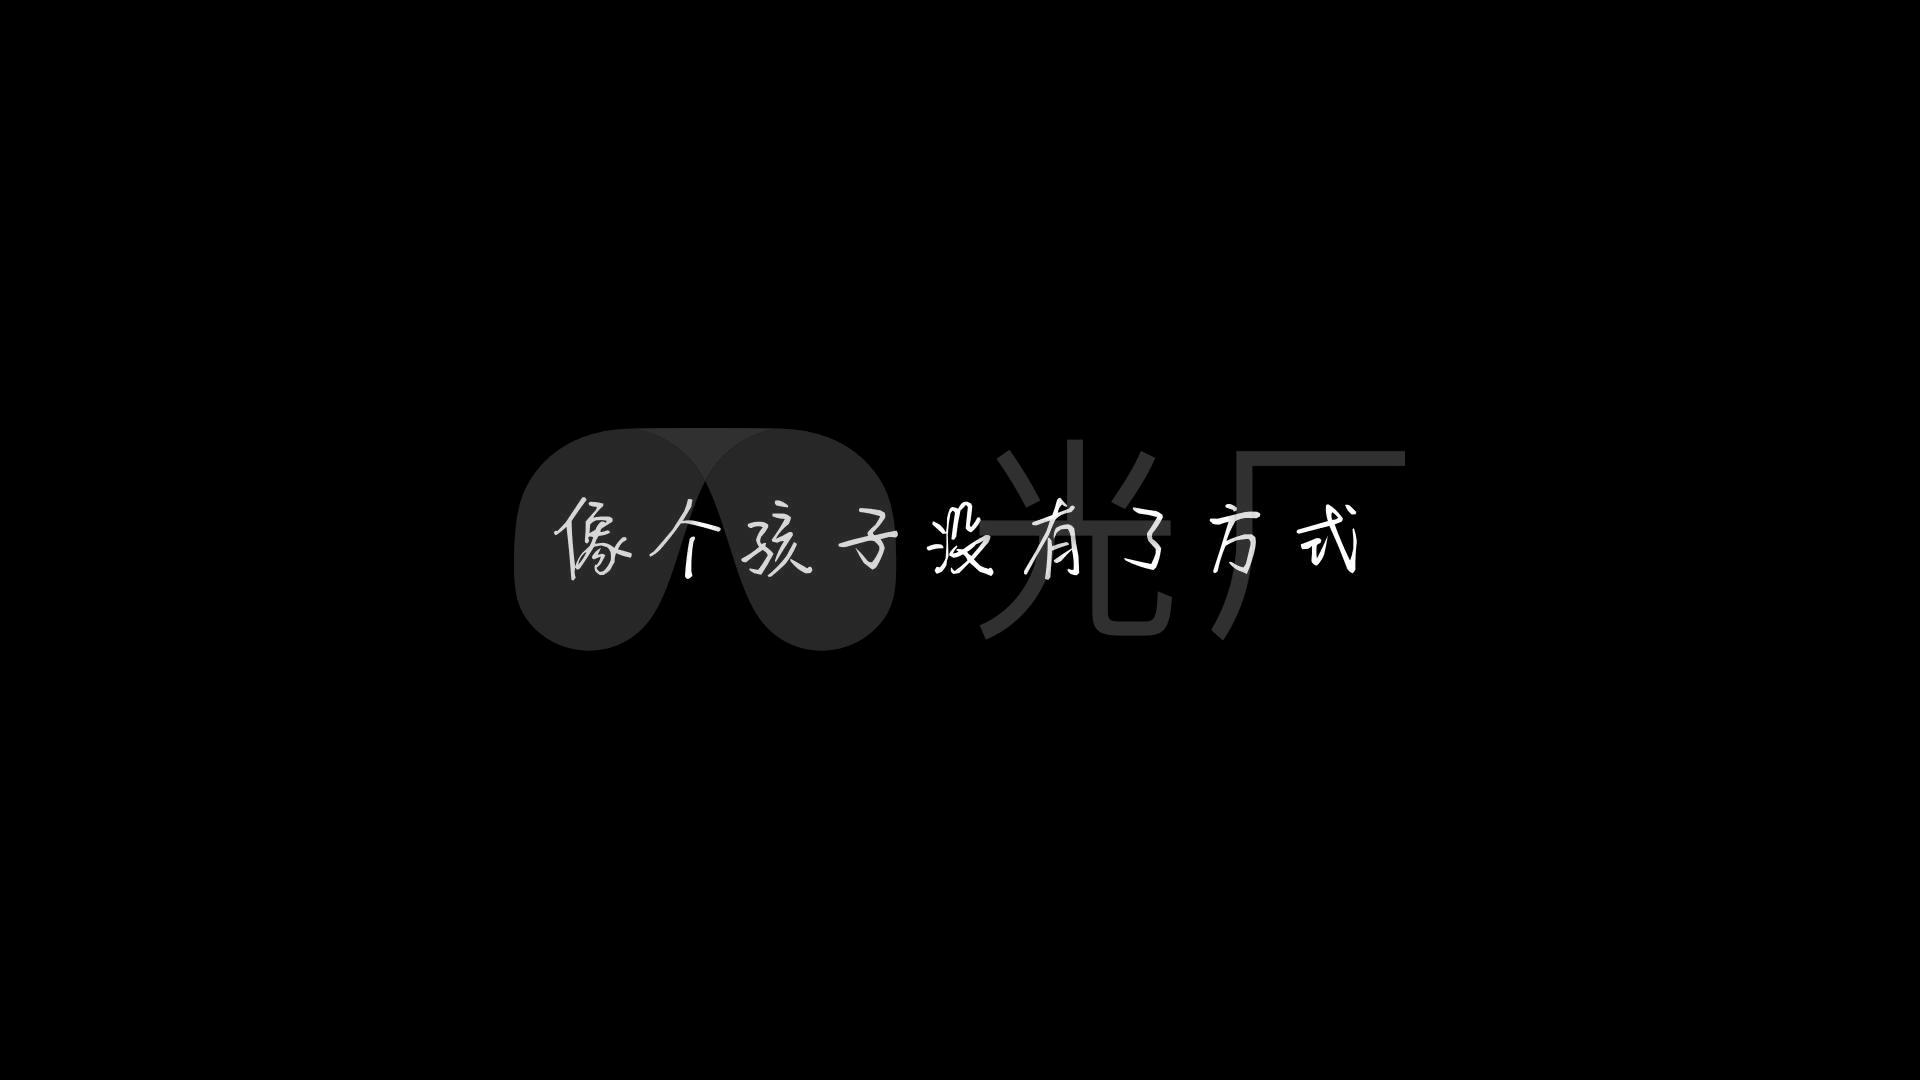 《一个人挺好》-杨小壮(1080p)